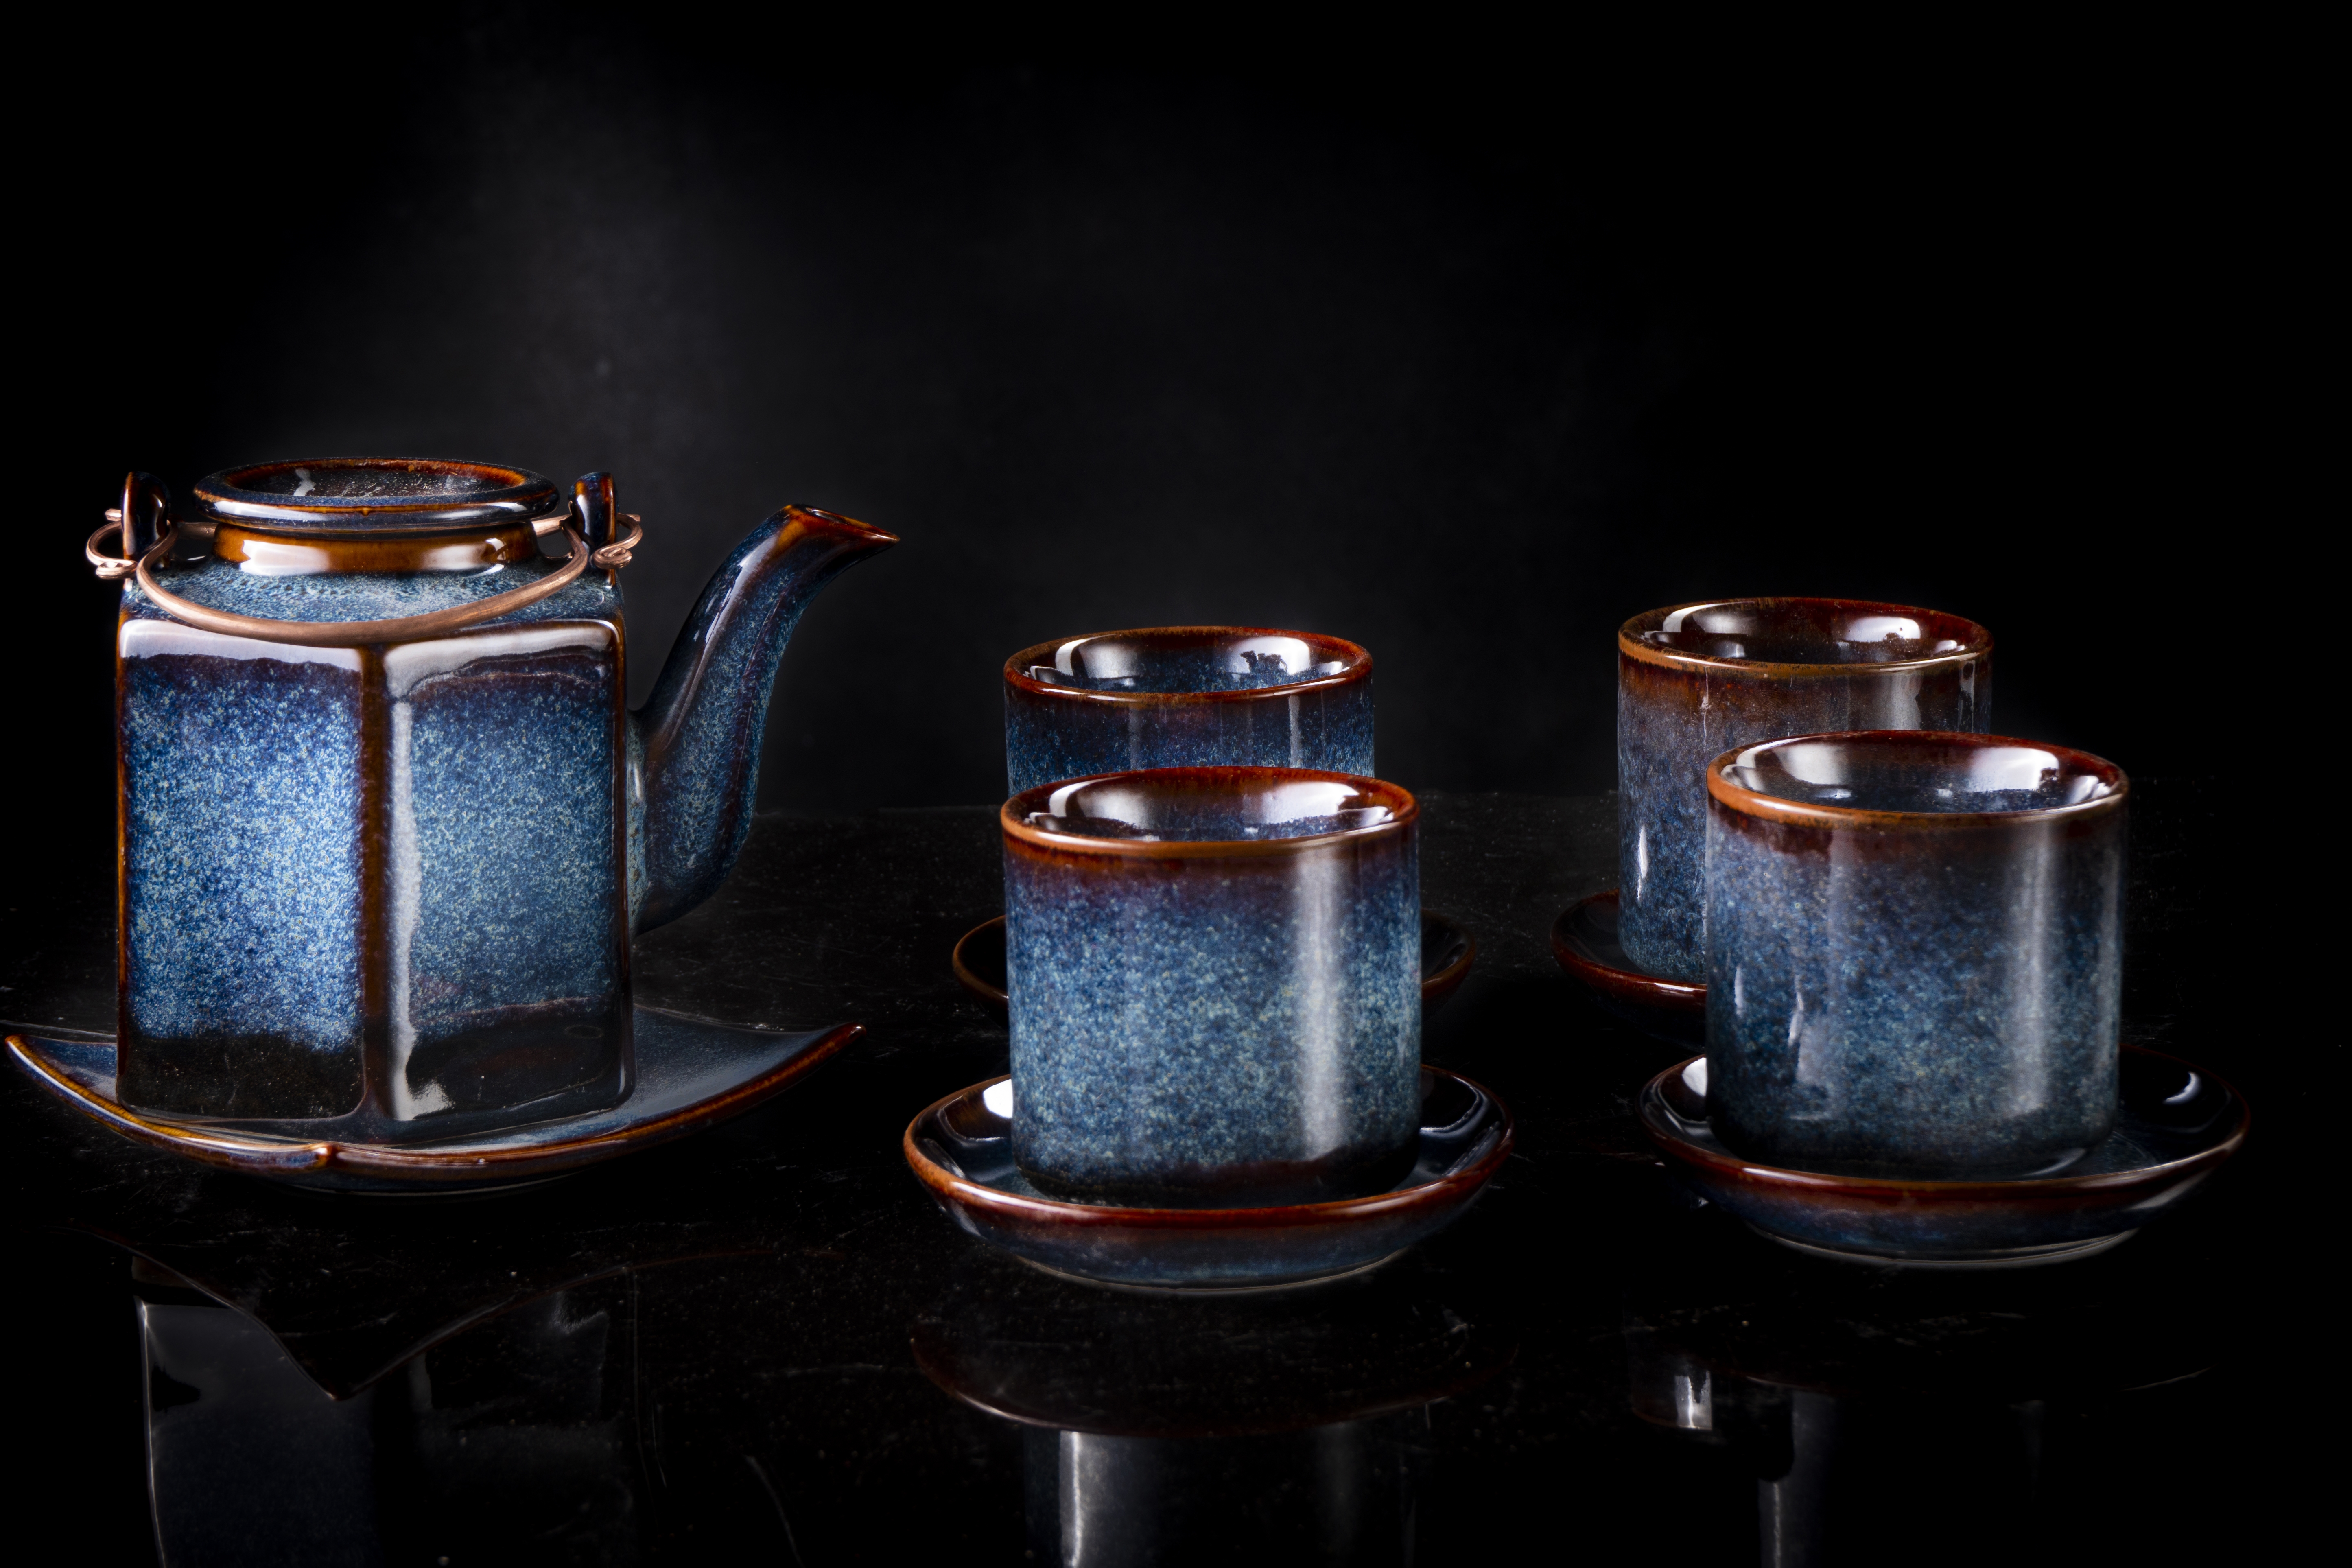 Hexagonal blue Tea set / Bộ ấm trà lục giác đẳng cấp - men xanh hỏa biến sản xuất tại xưởng Gia Oanh Authentic Bat Trang